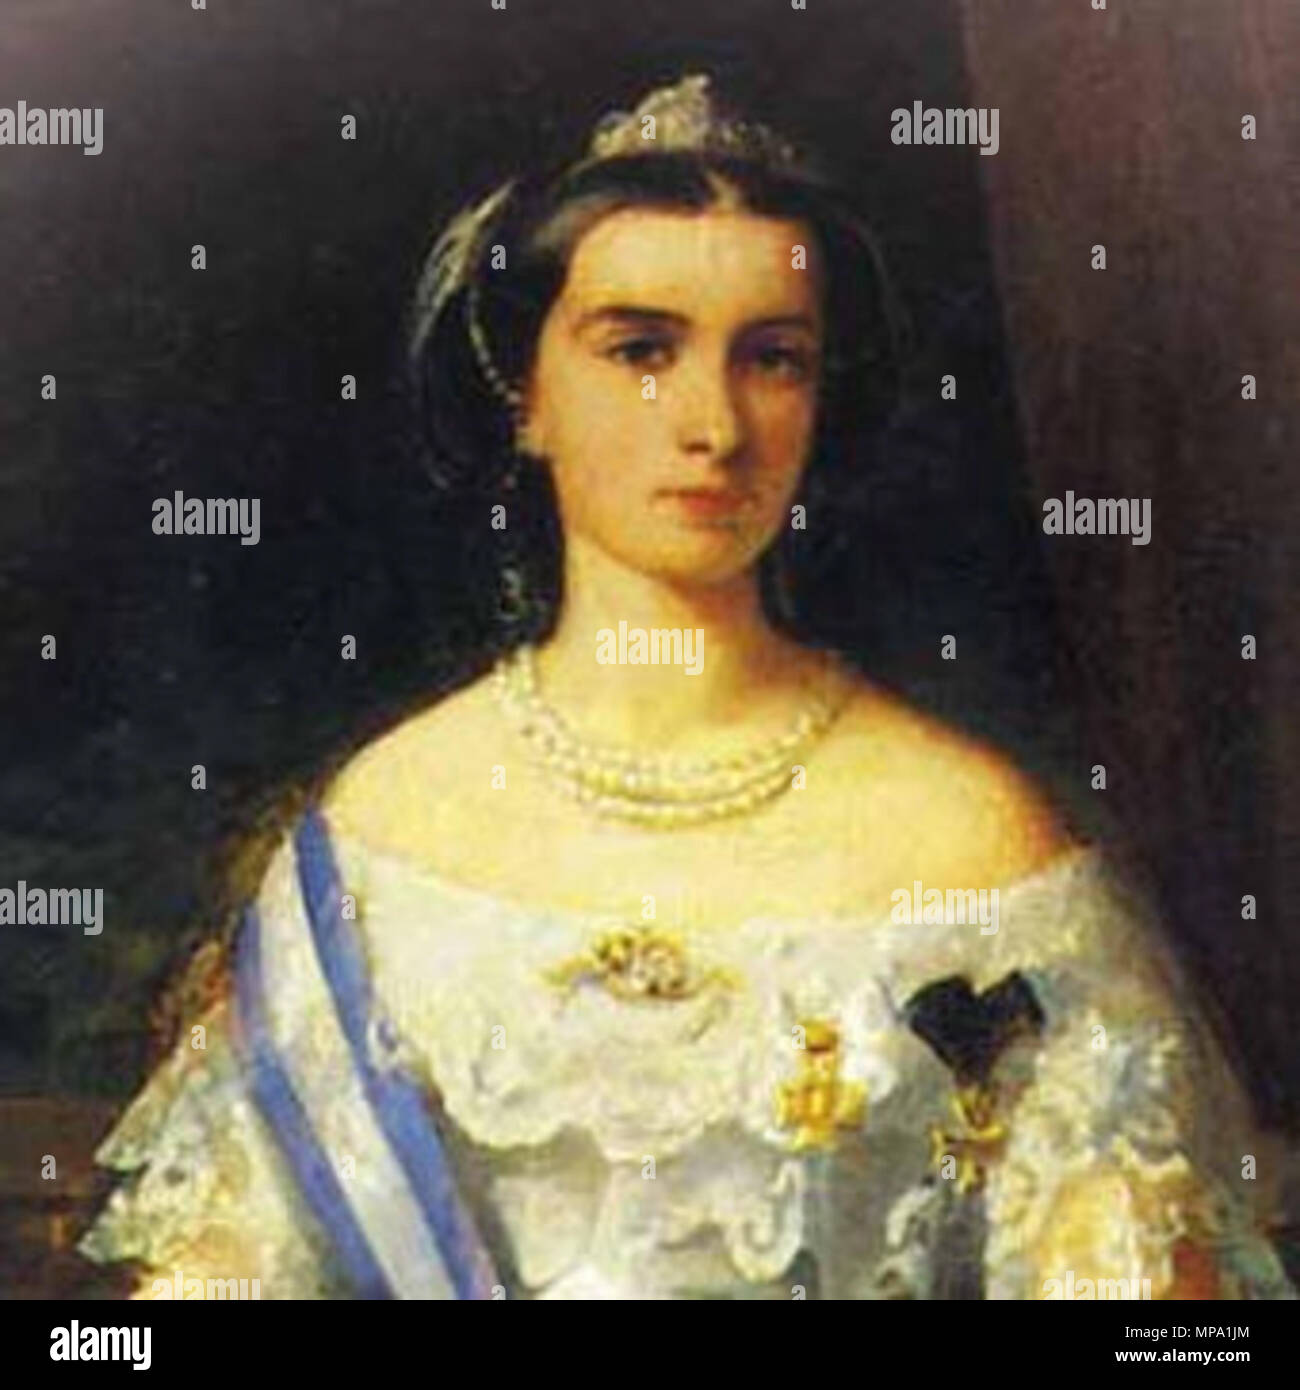 . Englisch: ein Portrait von Maria Sofia (1841-1925), Königin von Francis II. von Sizilien. Als Maria Sophie Amalie in der Bayerischen Königsfamilie Wittelsbach geboren hatte sie den Titel der Herzogin in Bayern. Sie war die Tochter von Maximilian, Herzog in Bayern und Ludovika, königliche Prinzessin von Bayern und wurde eine jüngere Schwester der Kaiserin Elisabeth ("Sissi"), heiratete Kaiser Franz Joseph von Österreich. Sie heiratete Francis 1859 und er König wurde ein paar Monate später. Obwohl das Königreich war verloren, in der sie Italien zu vereinen, während der Belagerung von Gaeta (1860-1861) sie grossen Mut gezeigt Stockfoto